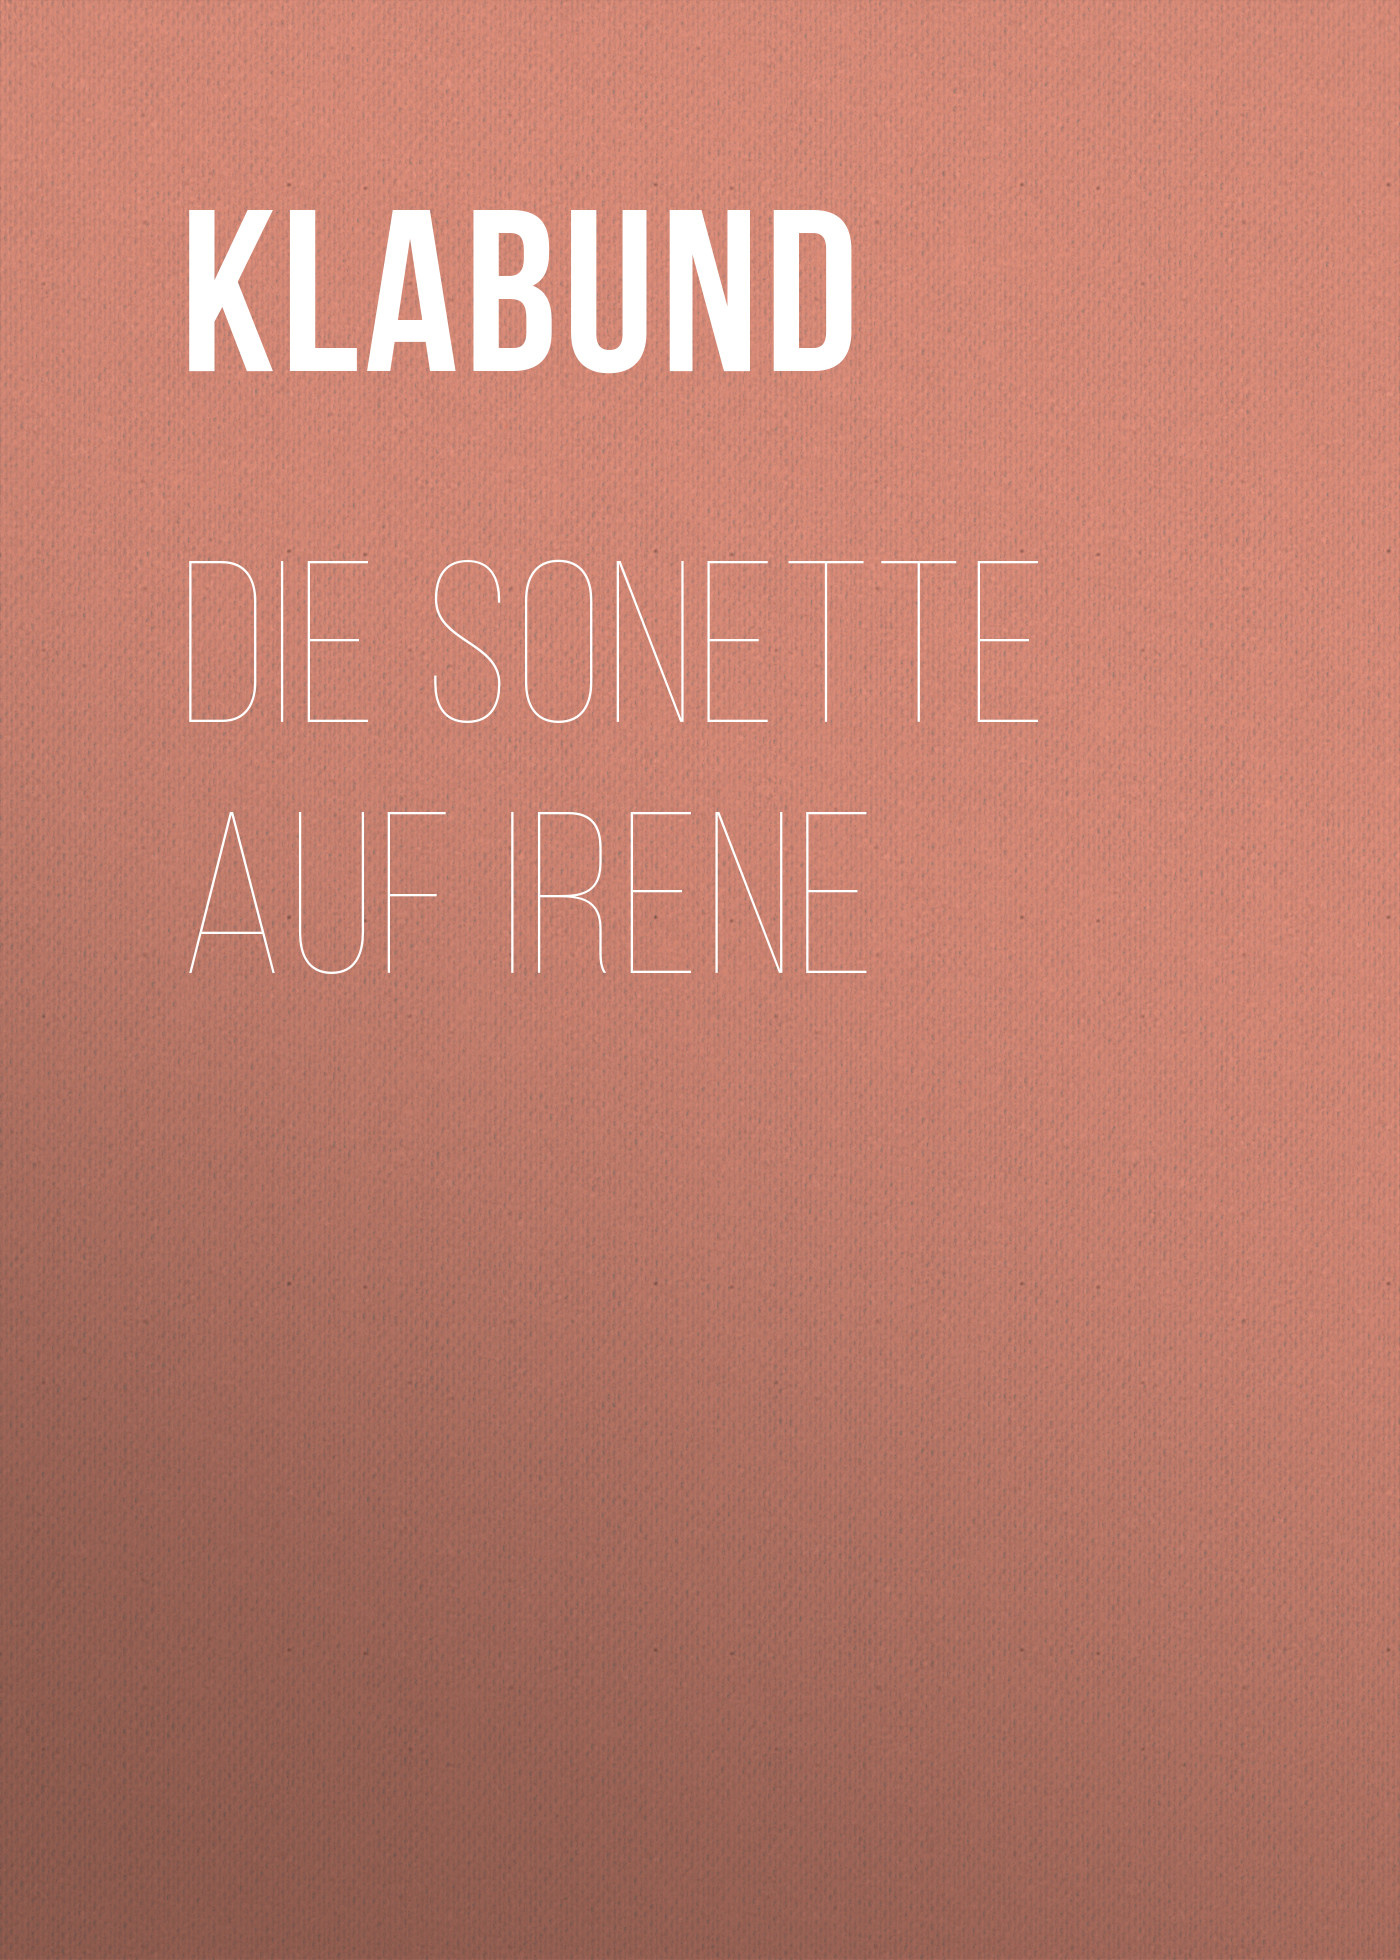 Книга Die Sonette auf Irene из серии , созданная Klabund , может относится к жанру Зарубежная классика. Стоимость электронной книги Die Sonette auf Irene с идентификатором 48633964 составляет 0 руб.